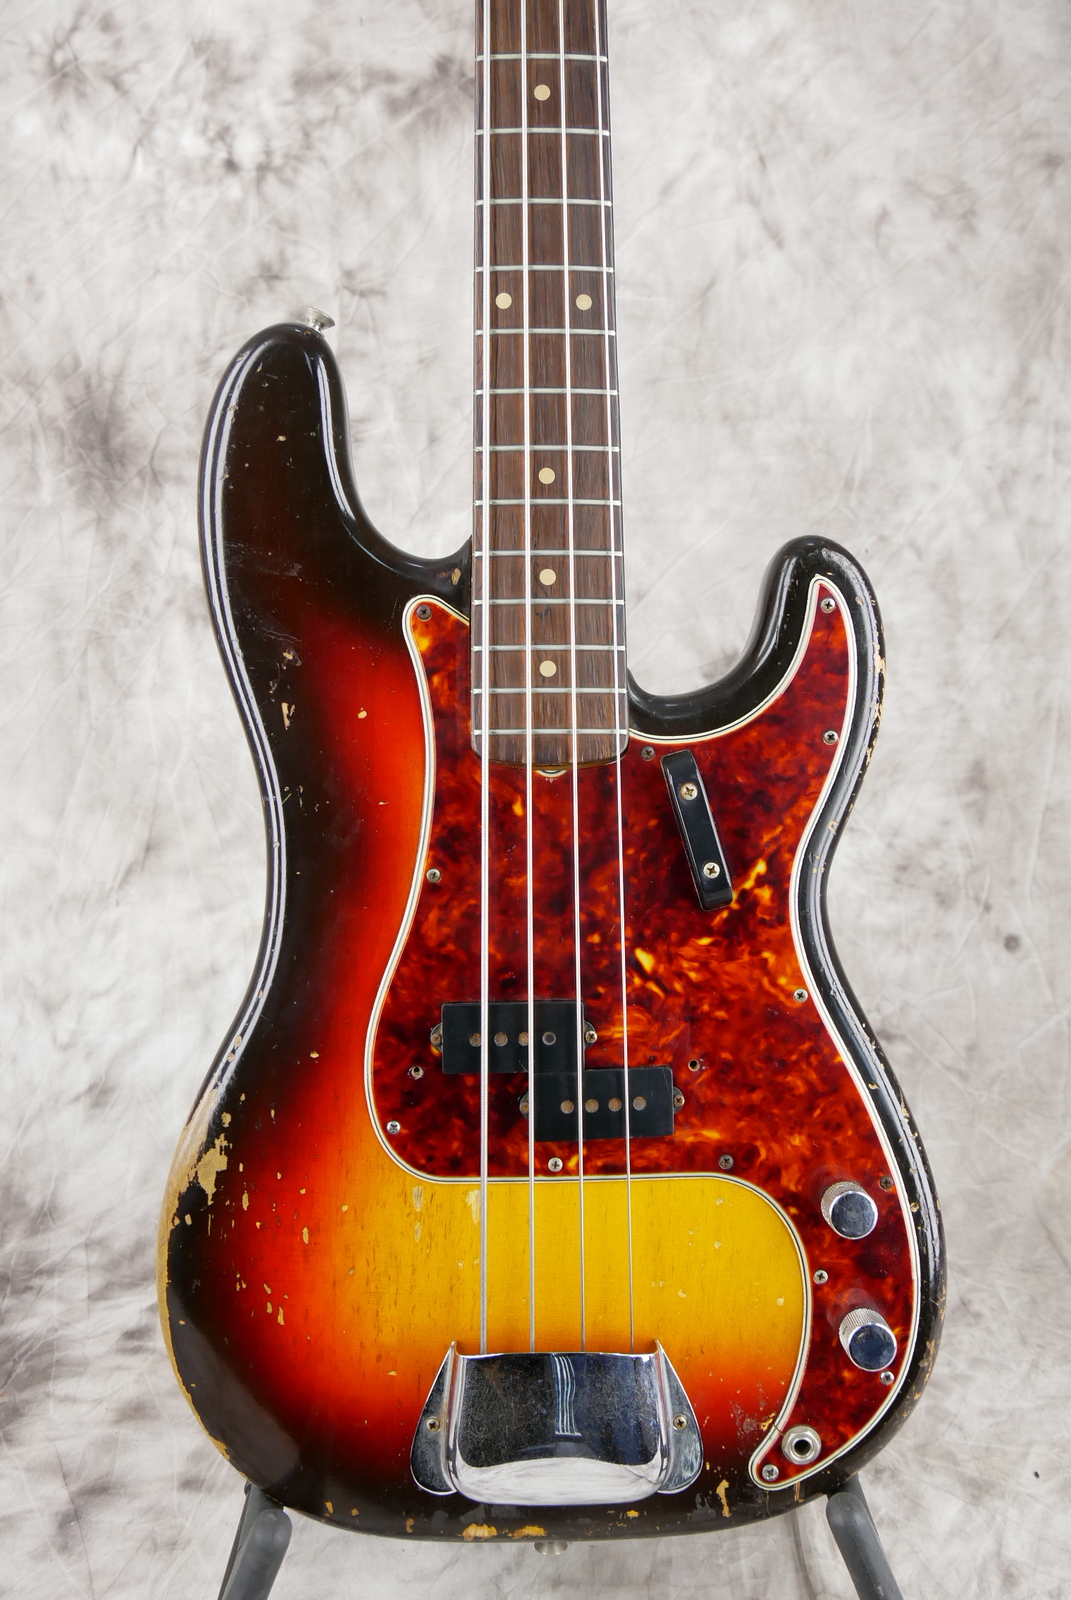 Fender_Precision_Bass_sunburst_1961-003.JPG